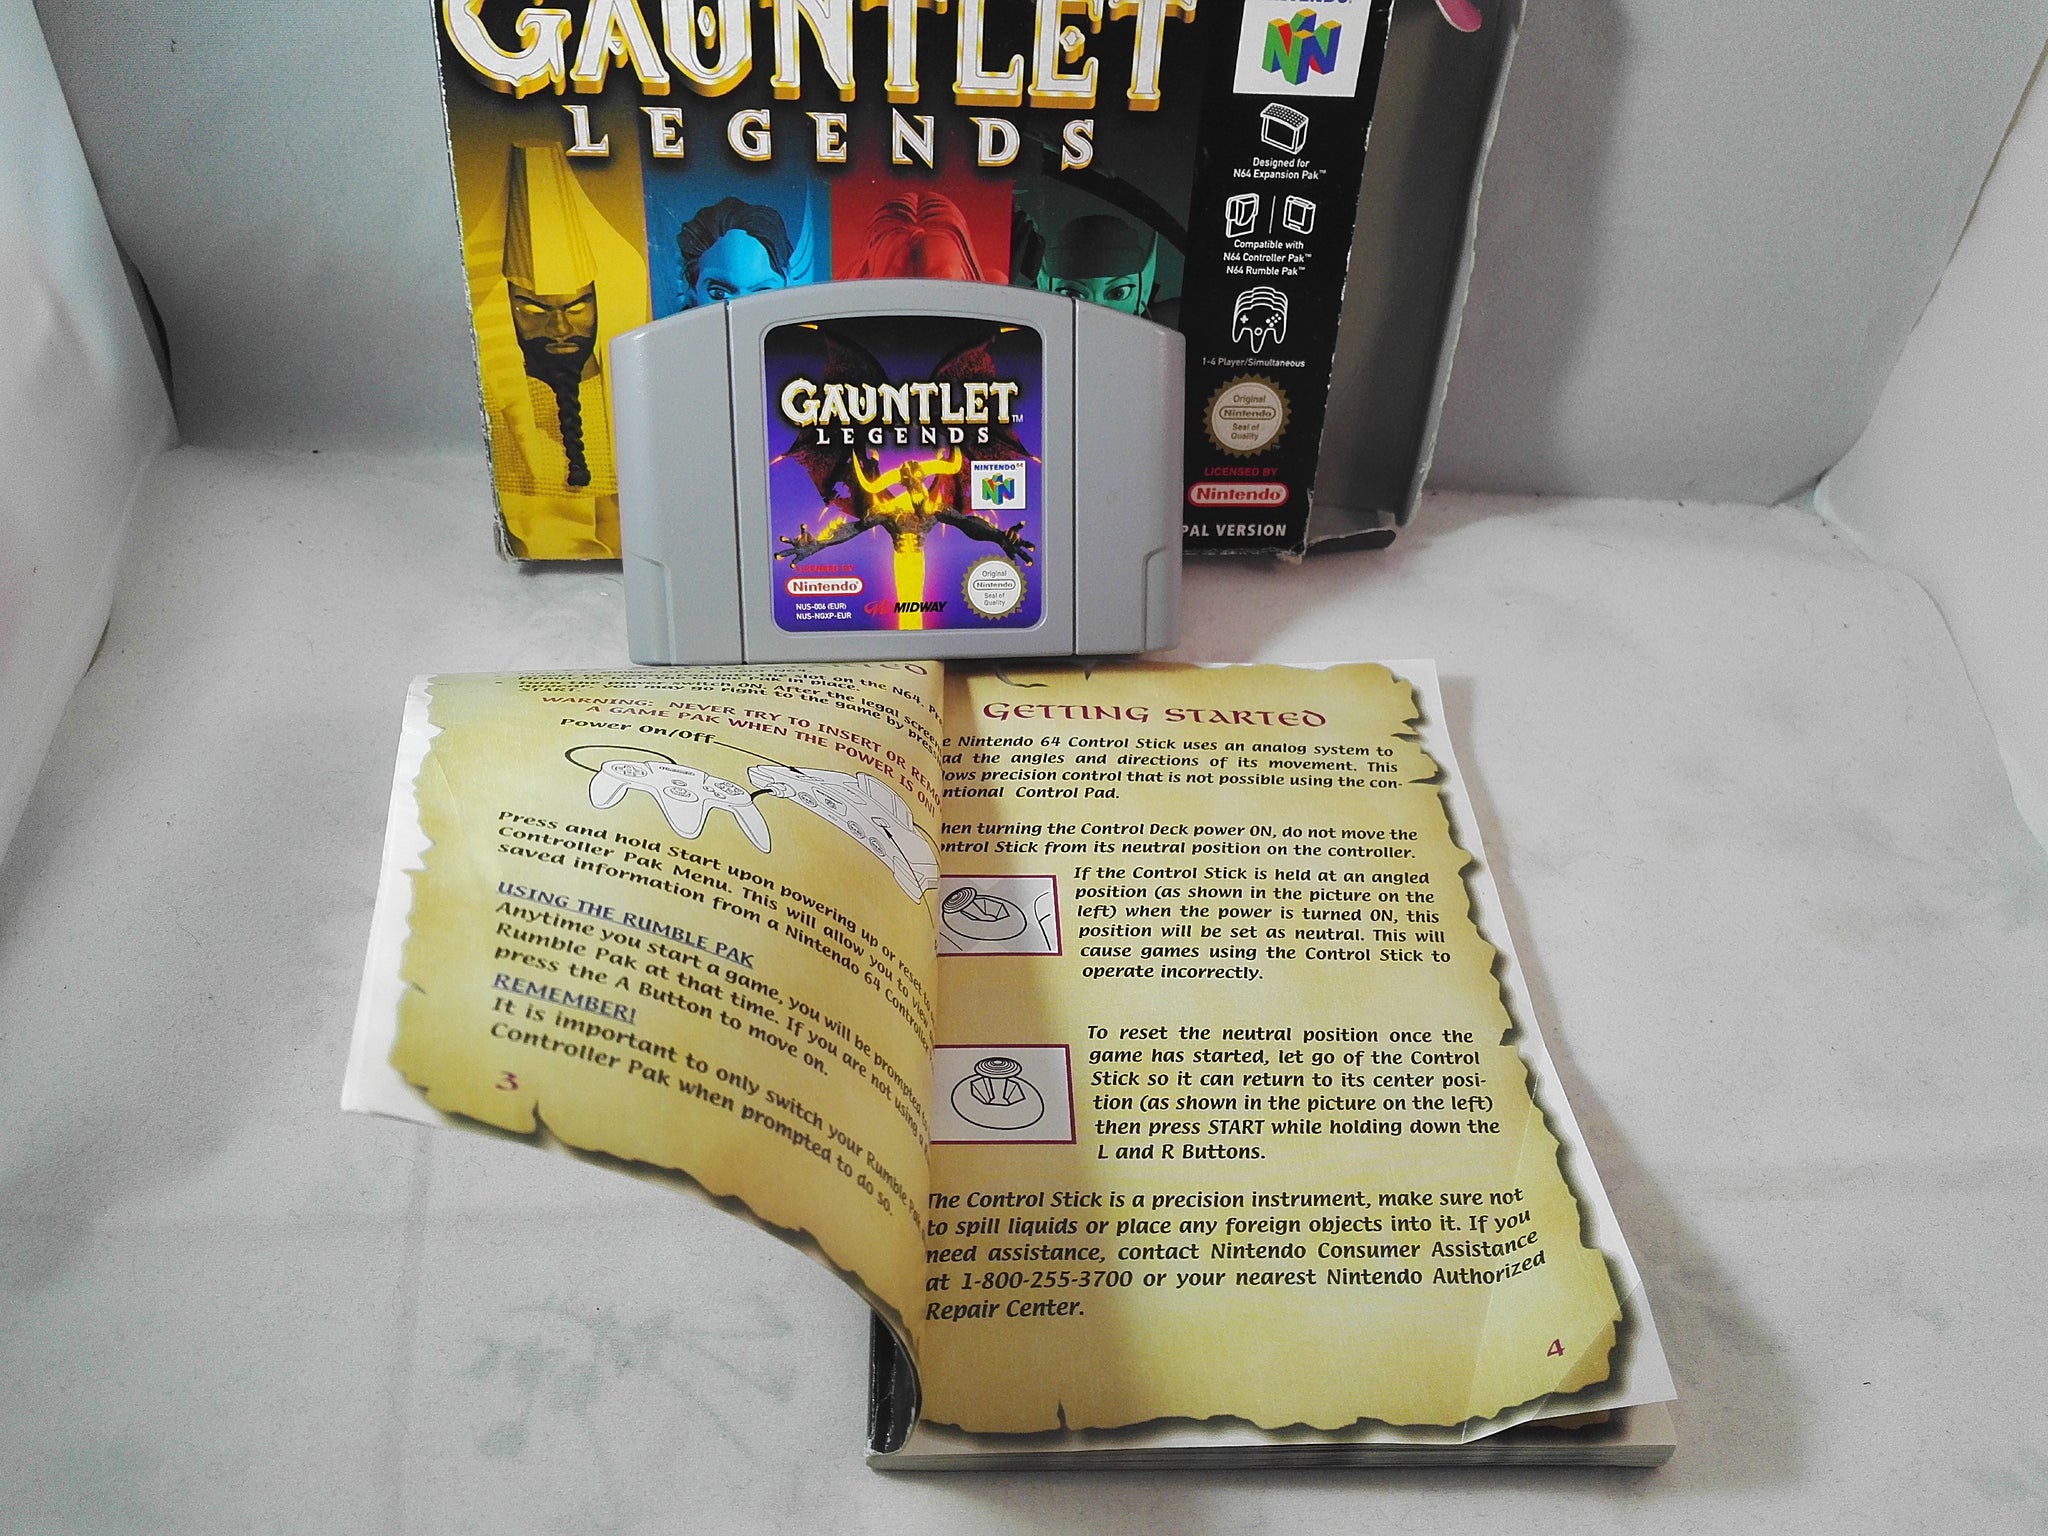 gauntlet legends n64 recommended leveling up